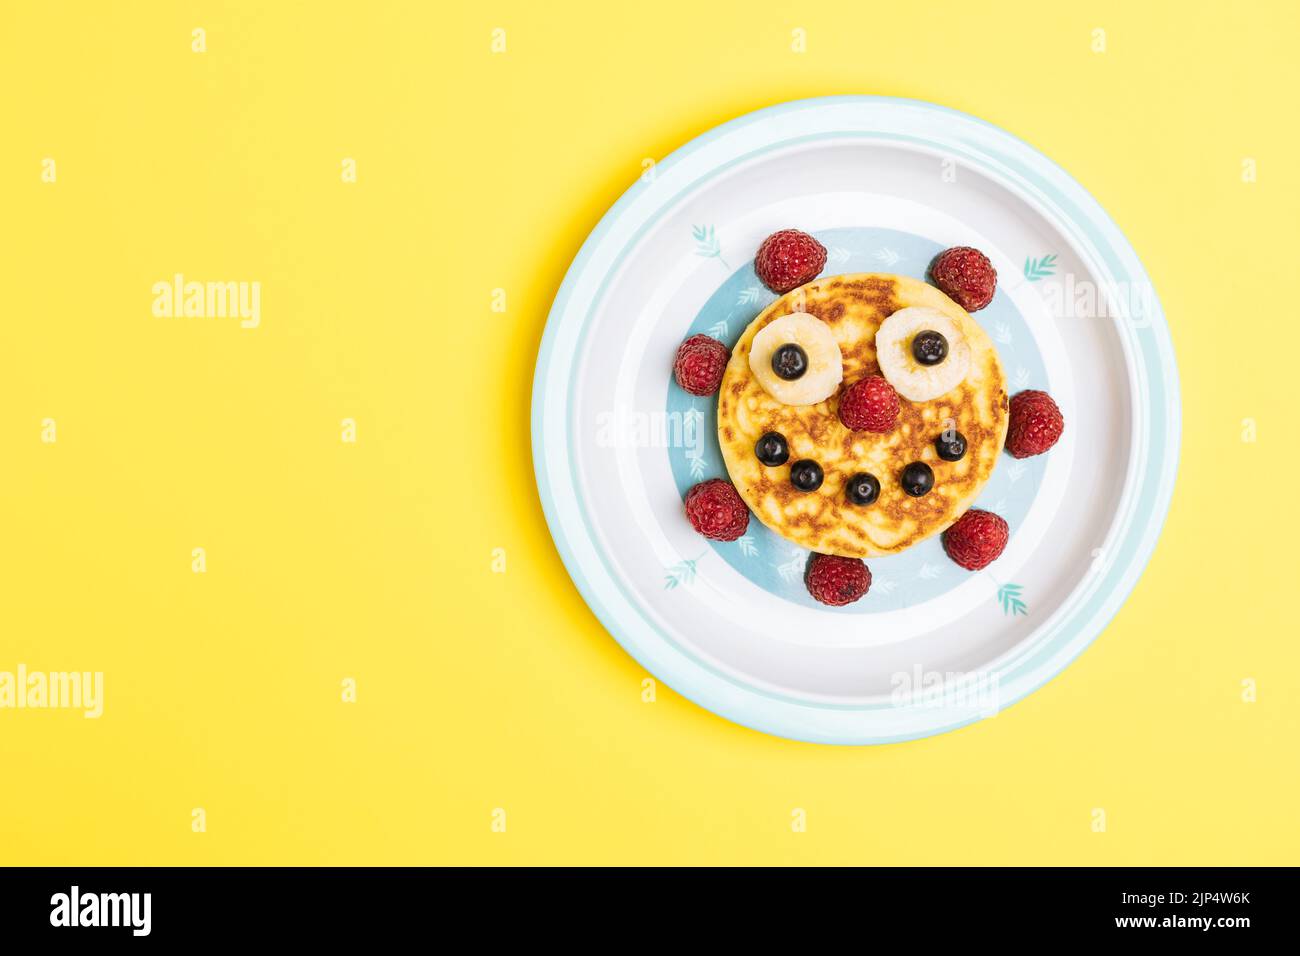 Crêpes américaines décorées comme sourire et visages heureux avec framboises, bleuets et bananes. Nourriture pour enfants, ludique et créative. Vue de dessus. Banque D'Images